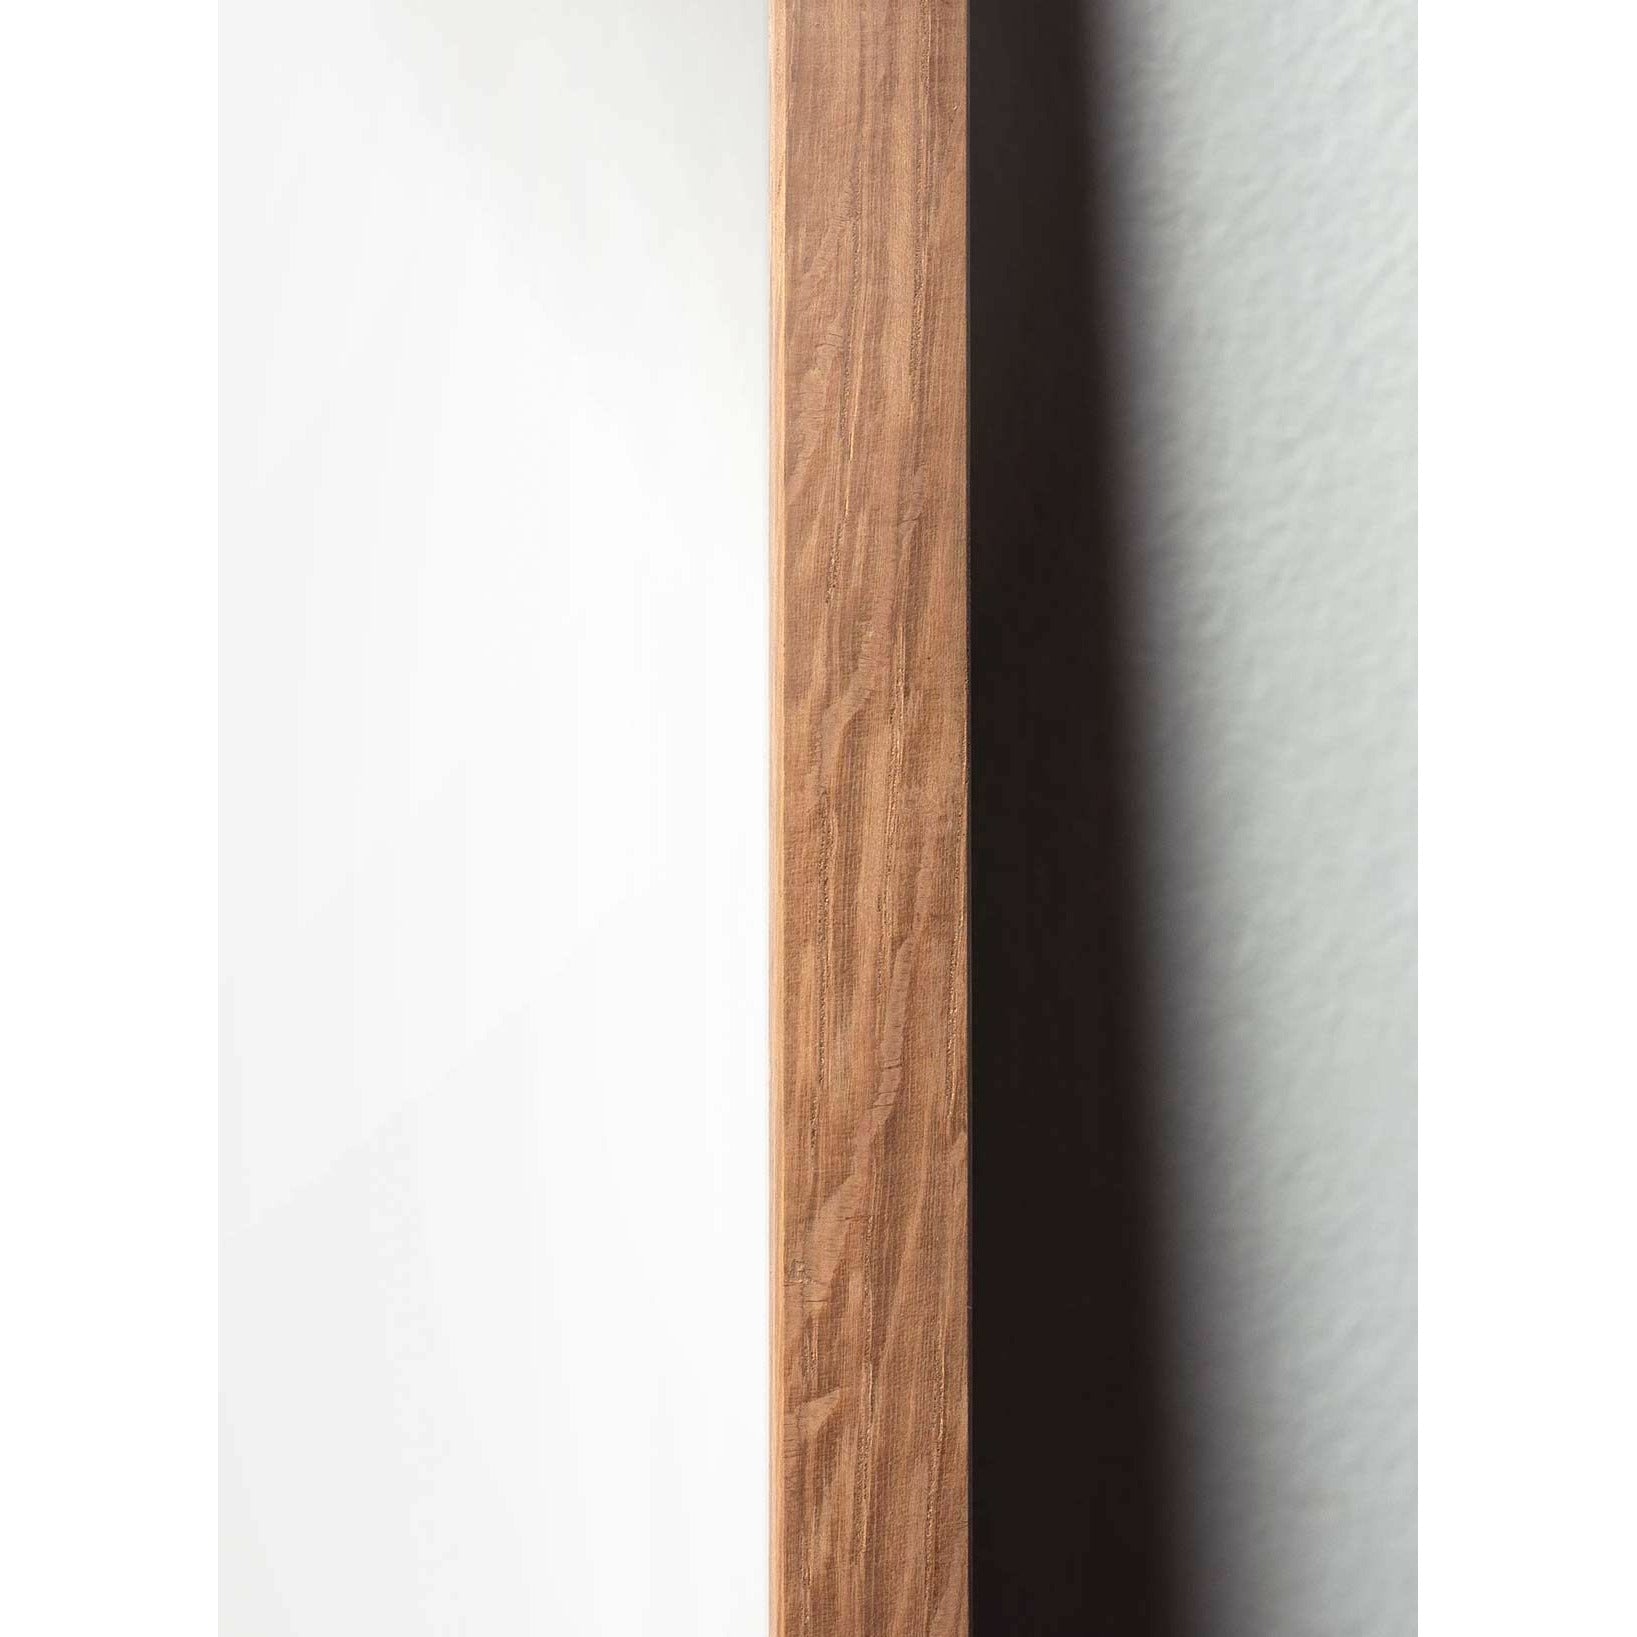 Póster de línea de cono de pino de creación, marco hecho de madera clara 50x70 cm, fondo blanco